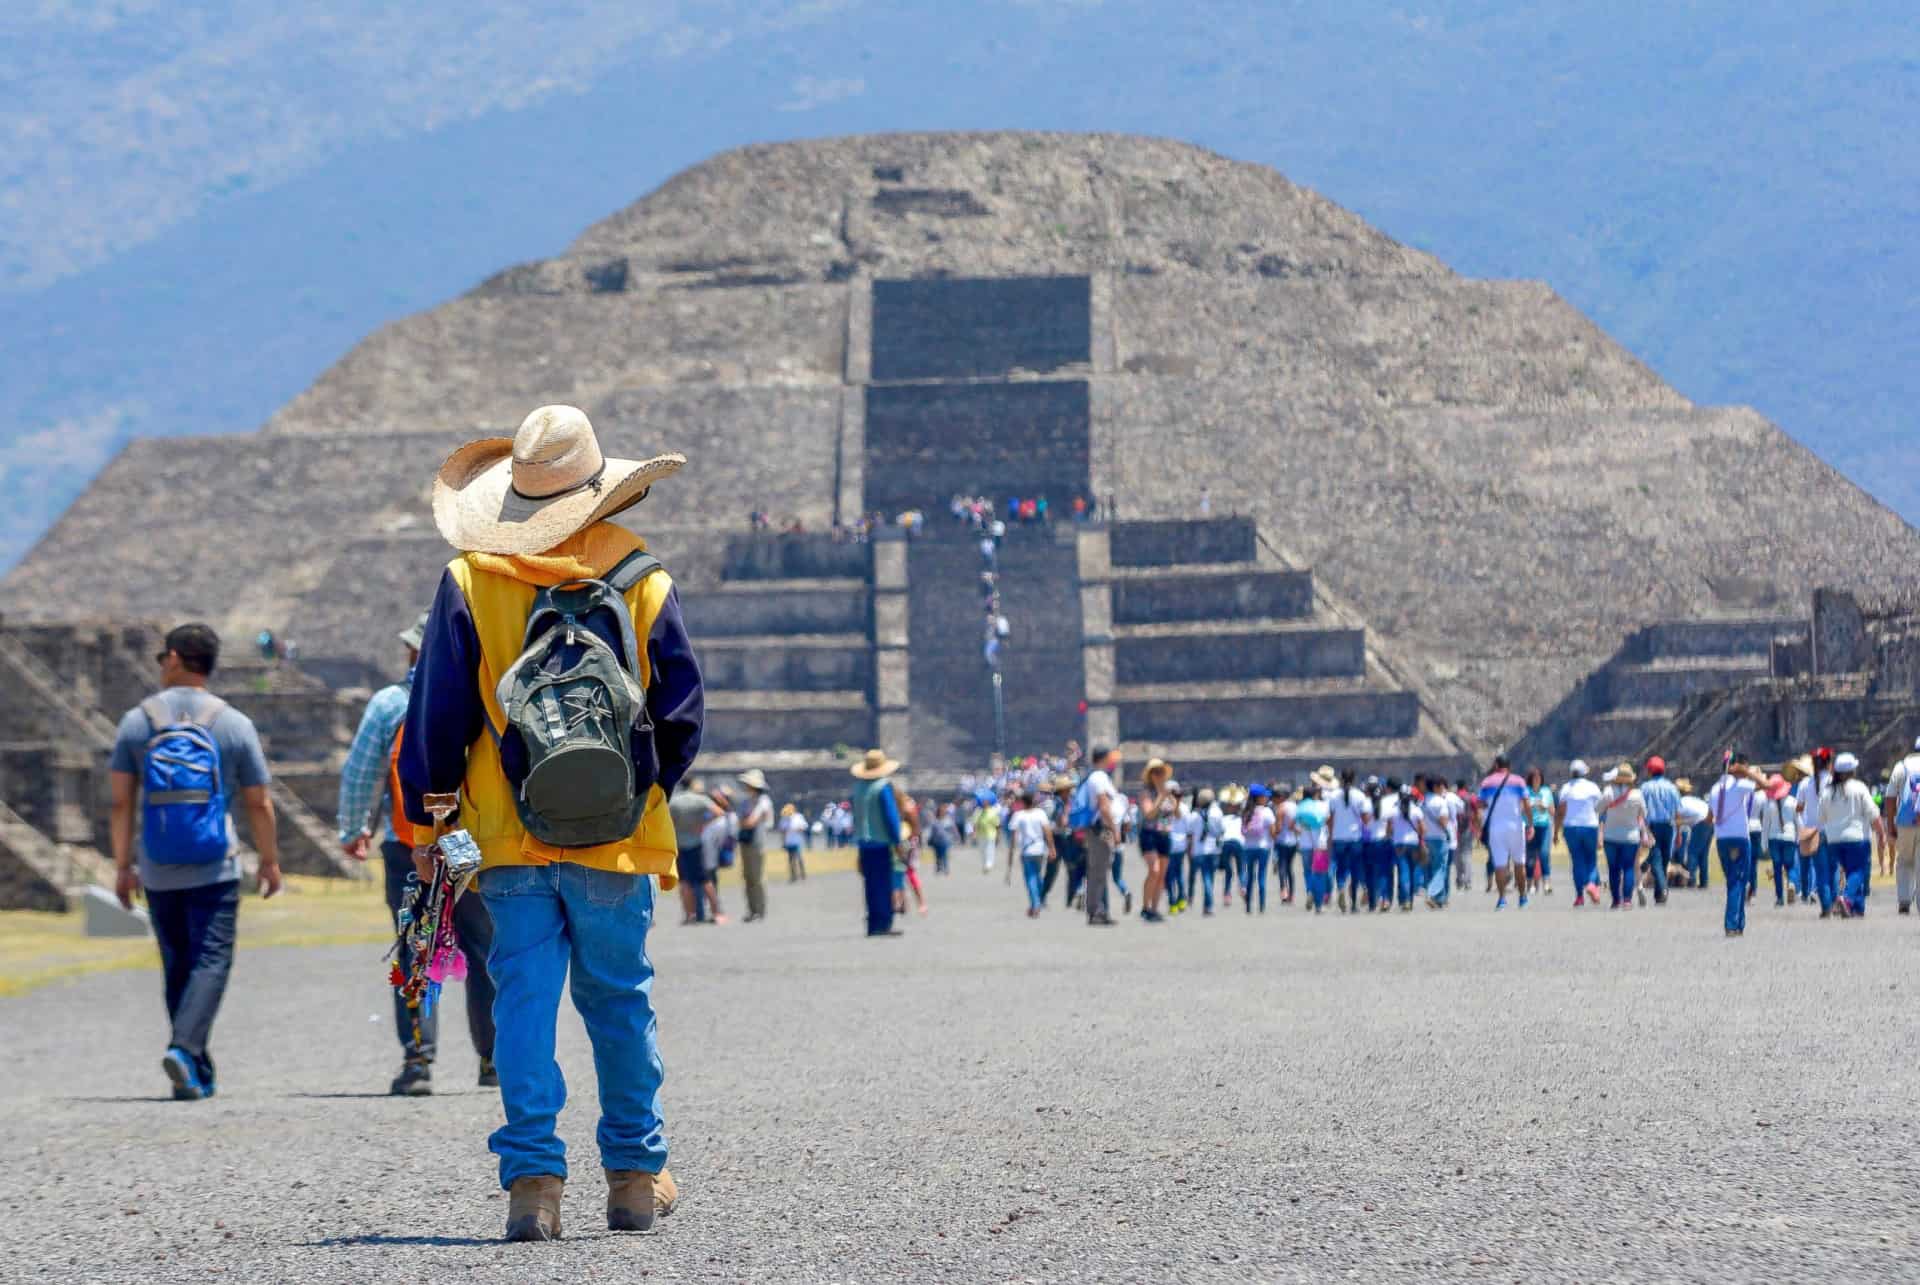 que faire au mexique visiter teotihuacan